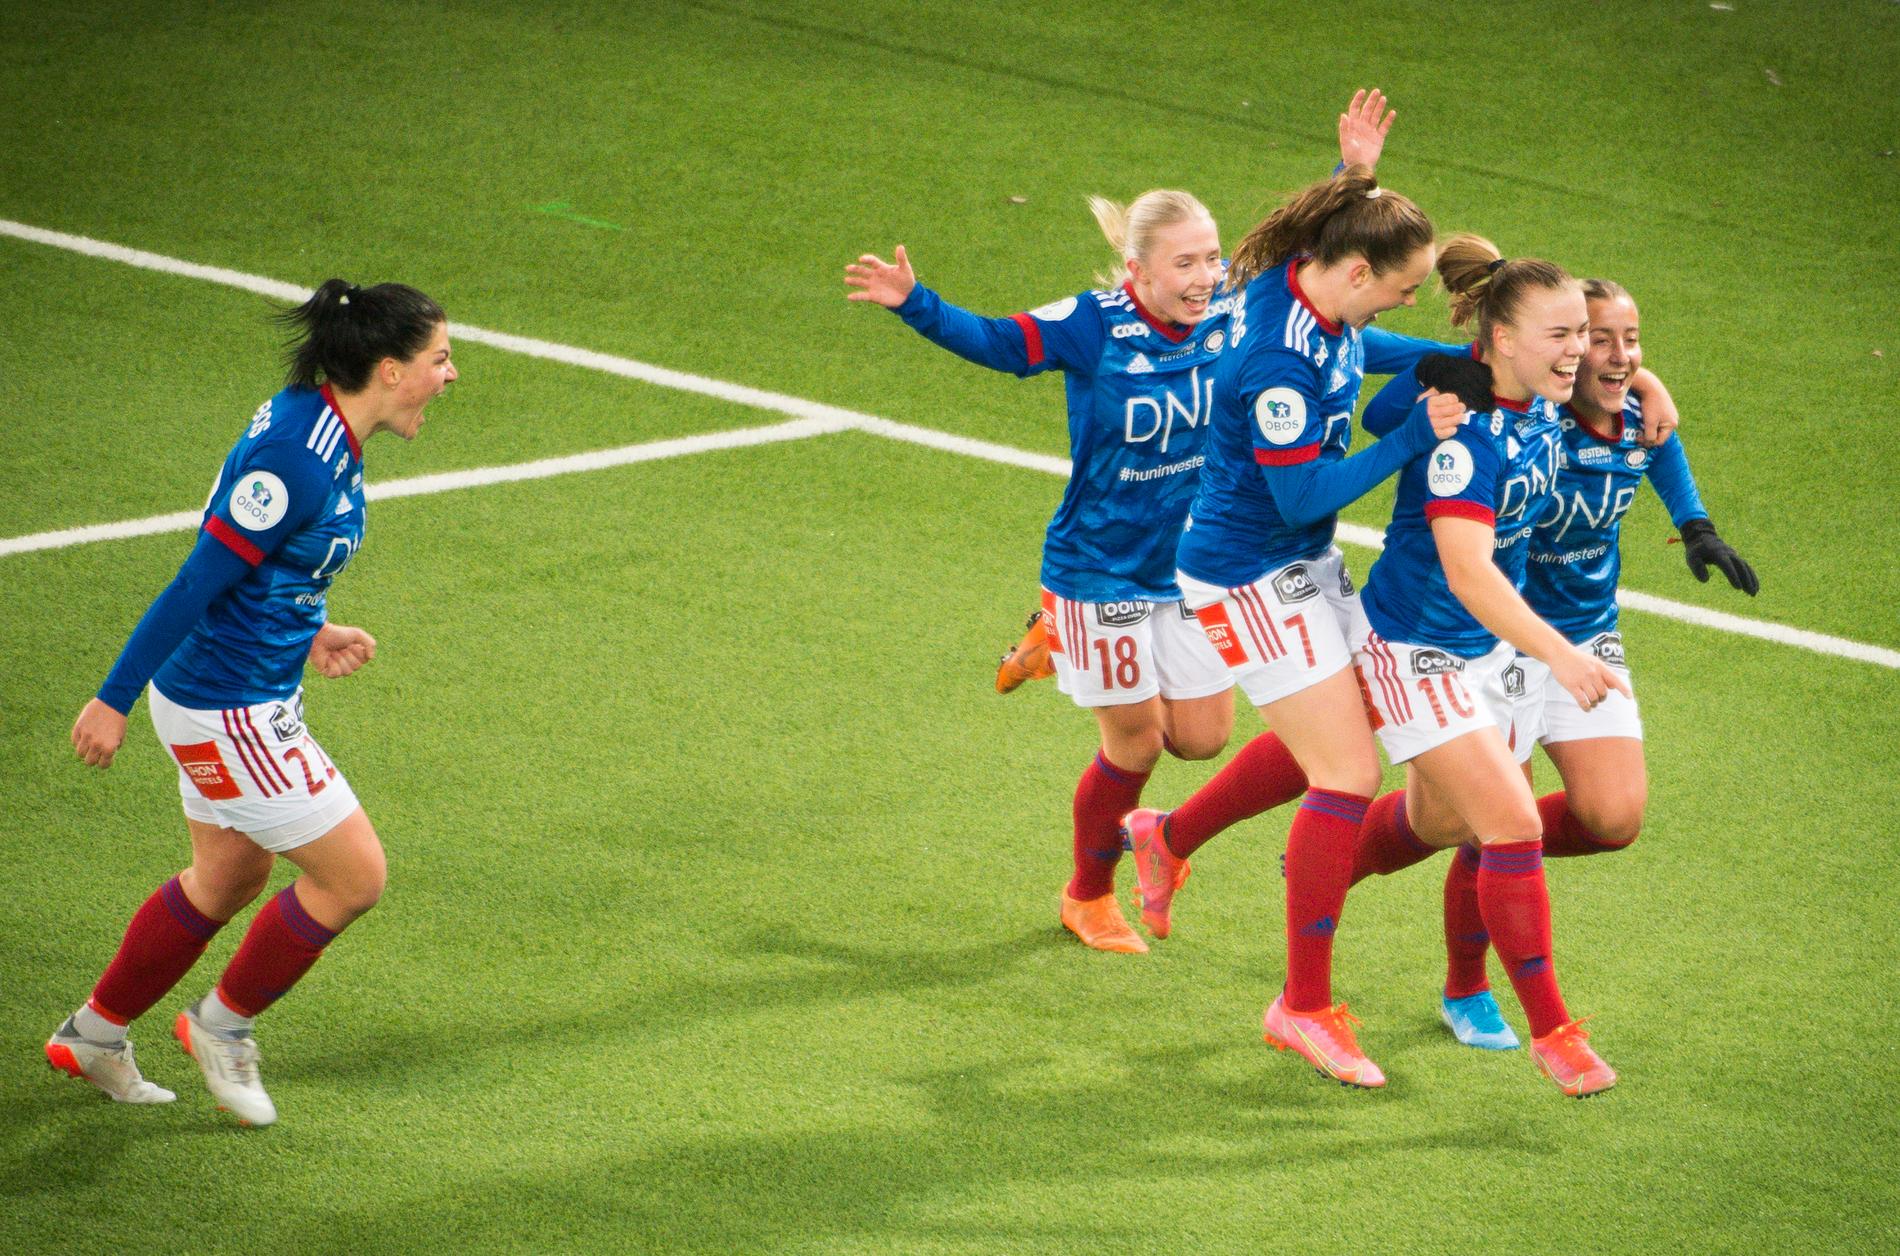 Tvedten e Thorsnes hanno calmato i nervi della premiere quando ha vinto Vålerenga – VG